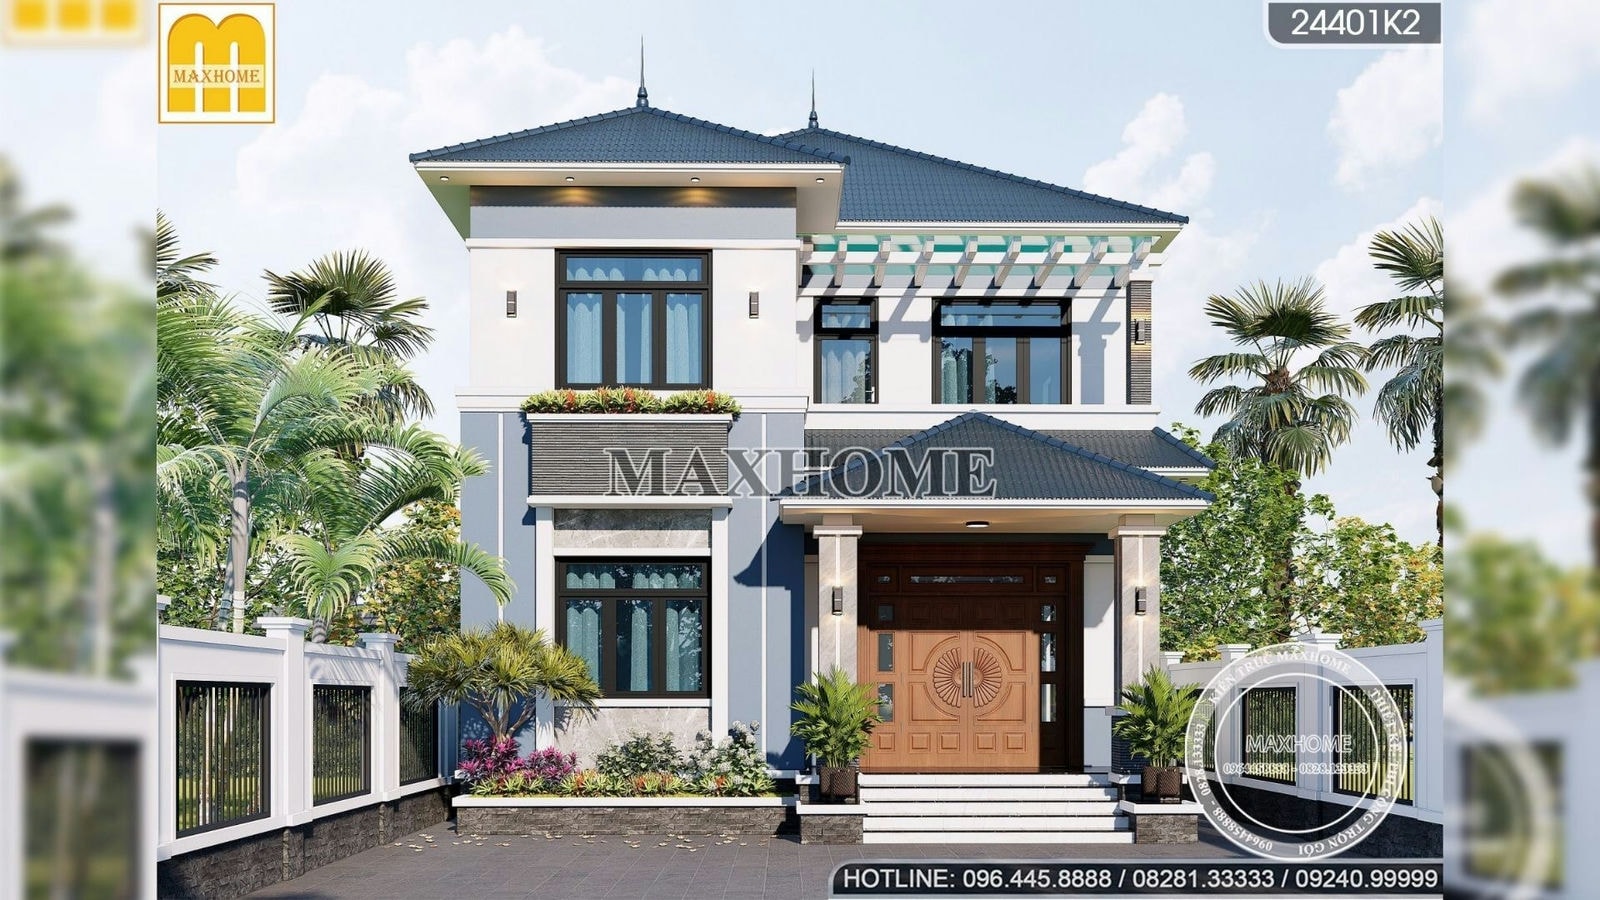 Thiết kế nhà 2 tầng mái Nhật hiện đại giá rẻ và đẹp tại Hà Nội | MH01631